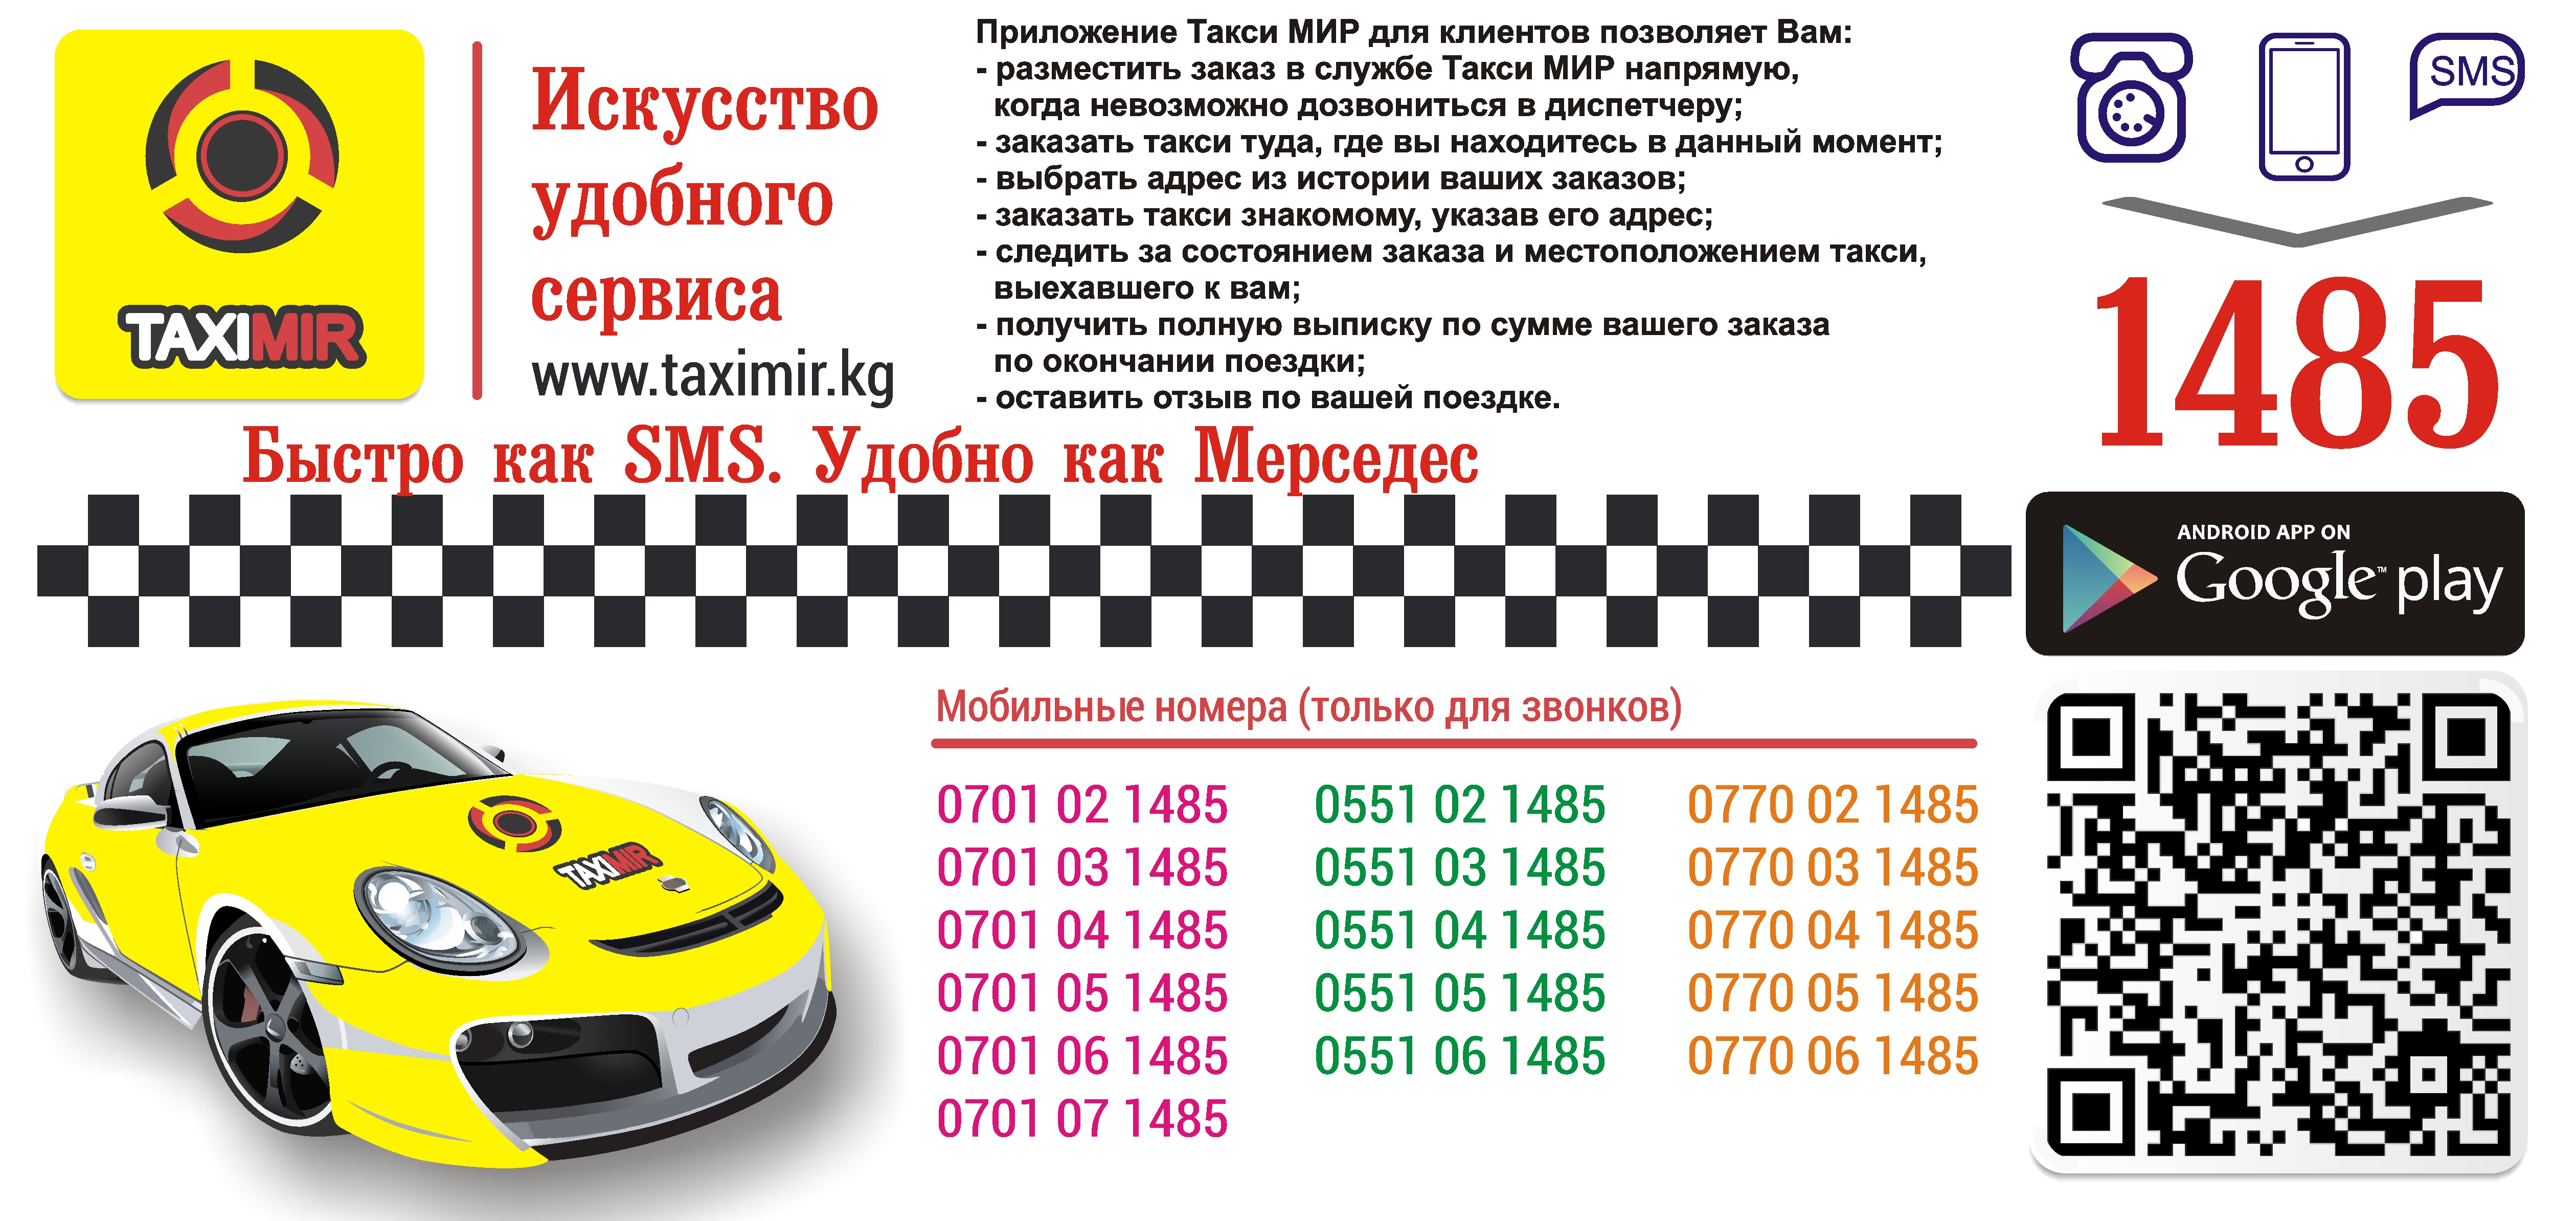 Такси пятигорск телефон для заказа. Такси мир. Смс такси. Такси Бишкек номер.